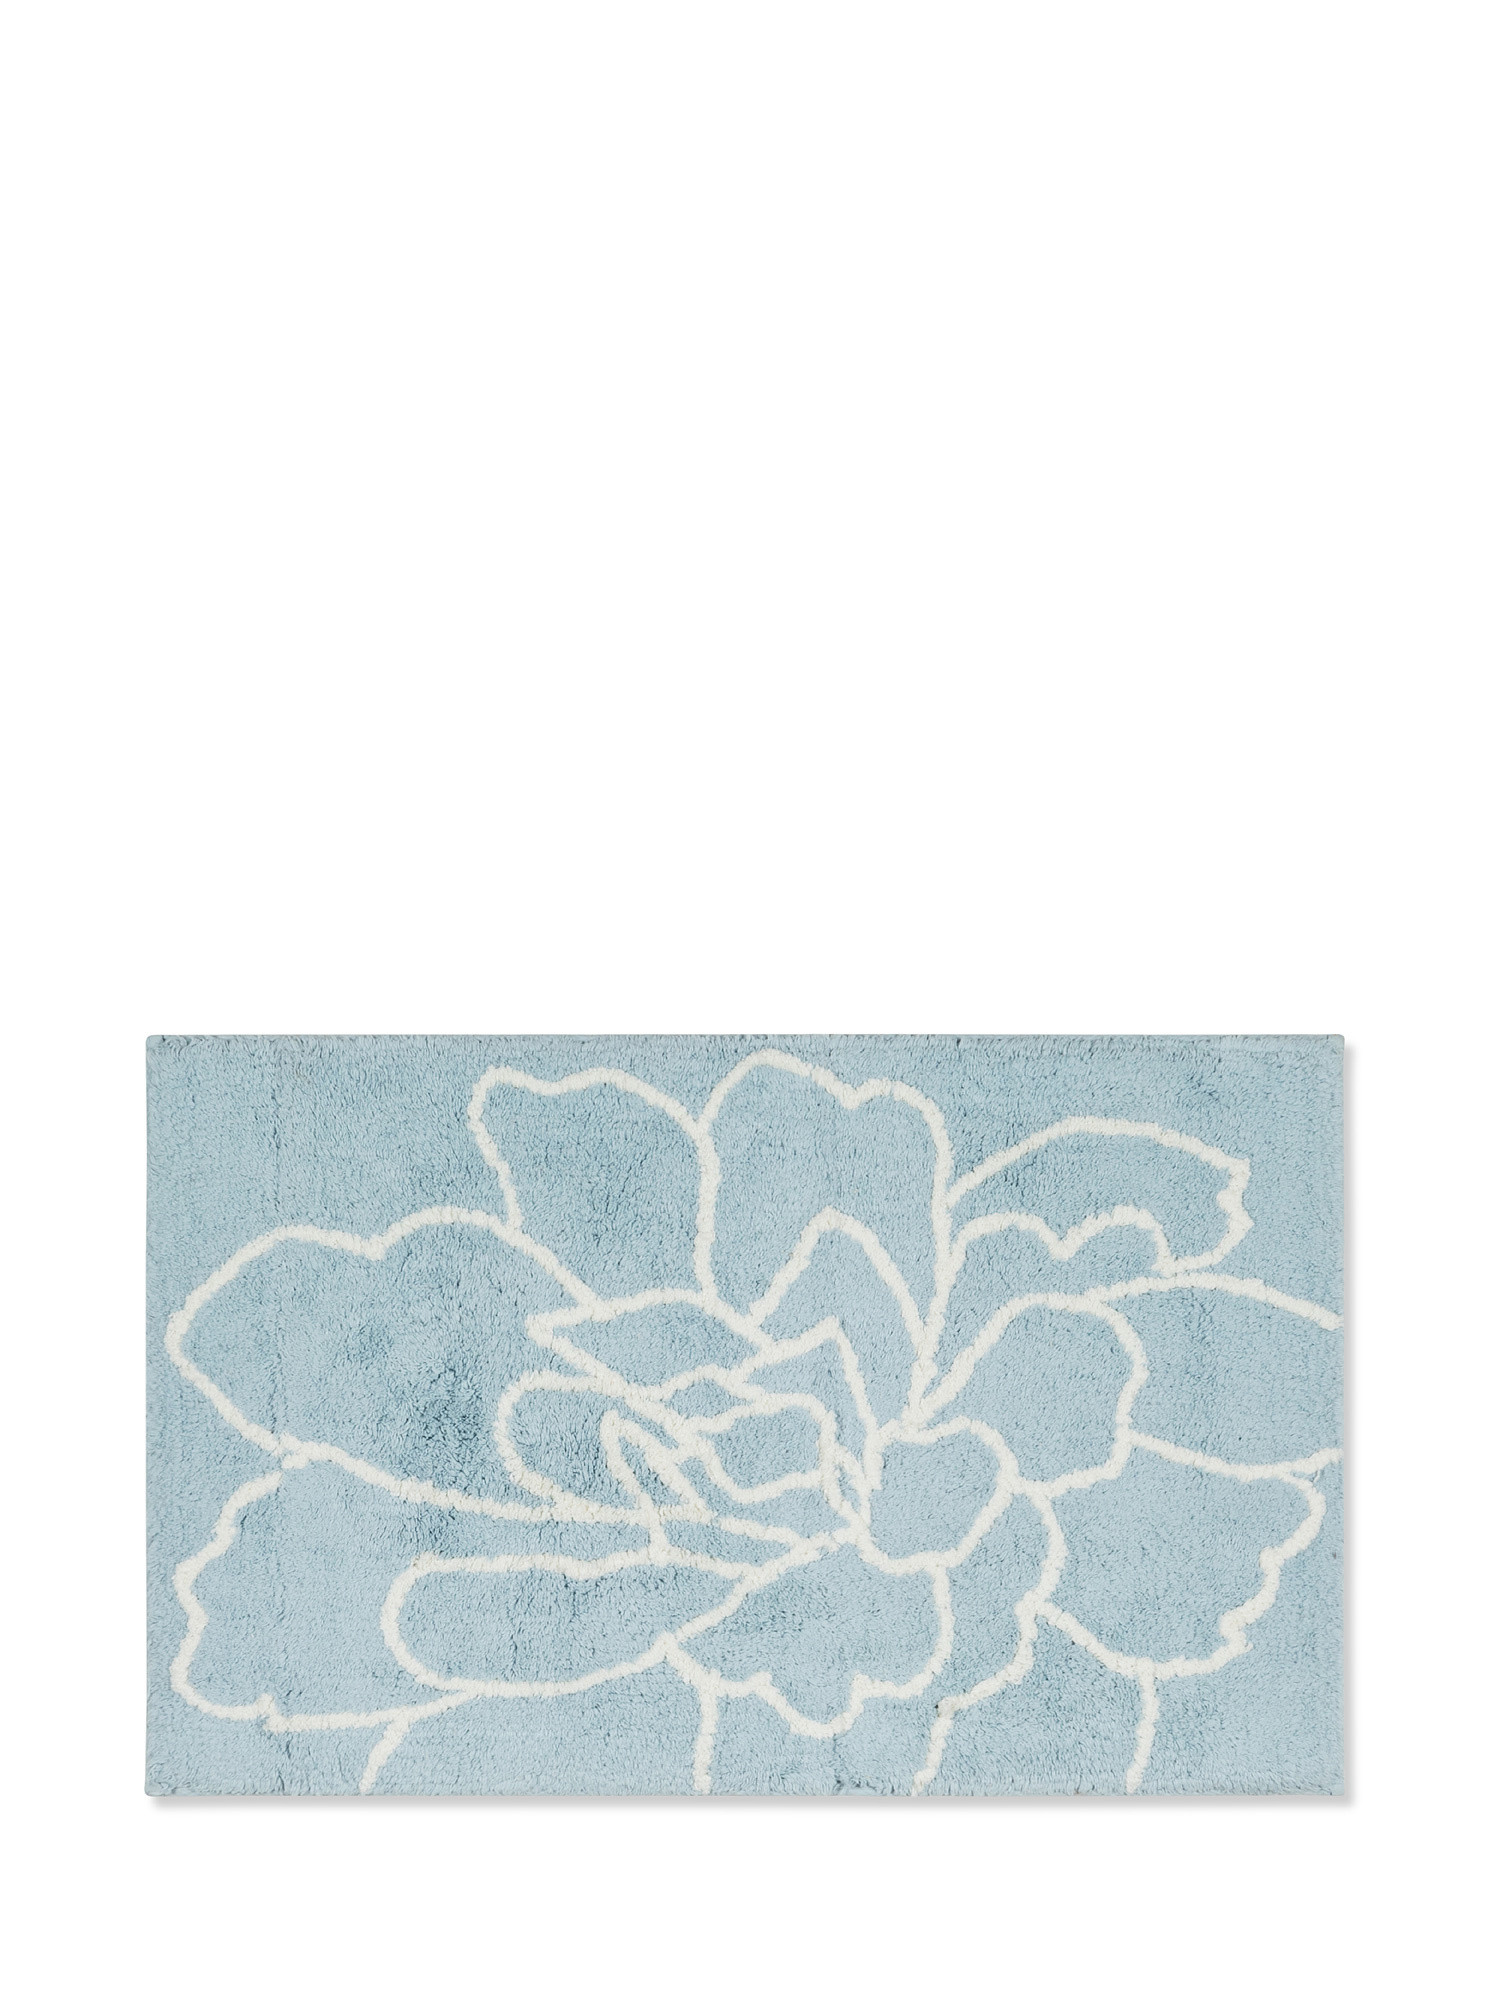 Tappeto bagno spugna di cotone floreale, Azzurro, large image number 0